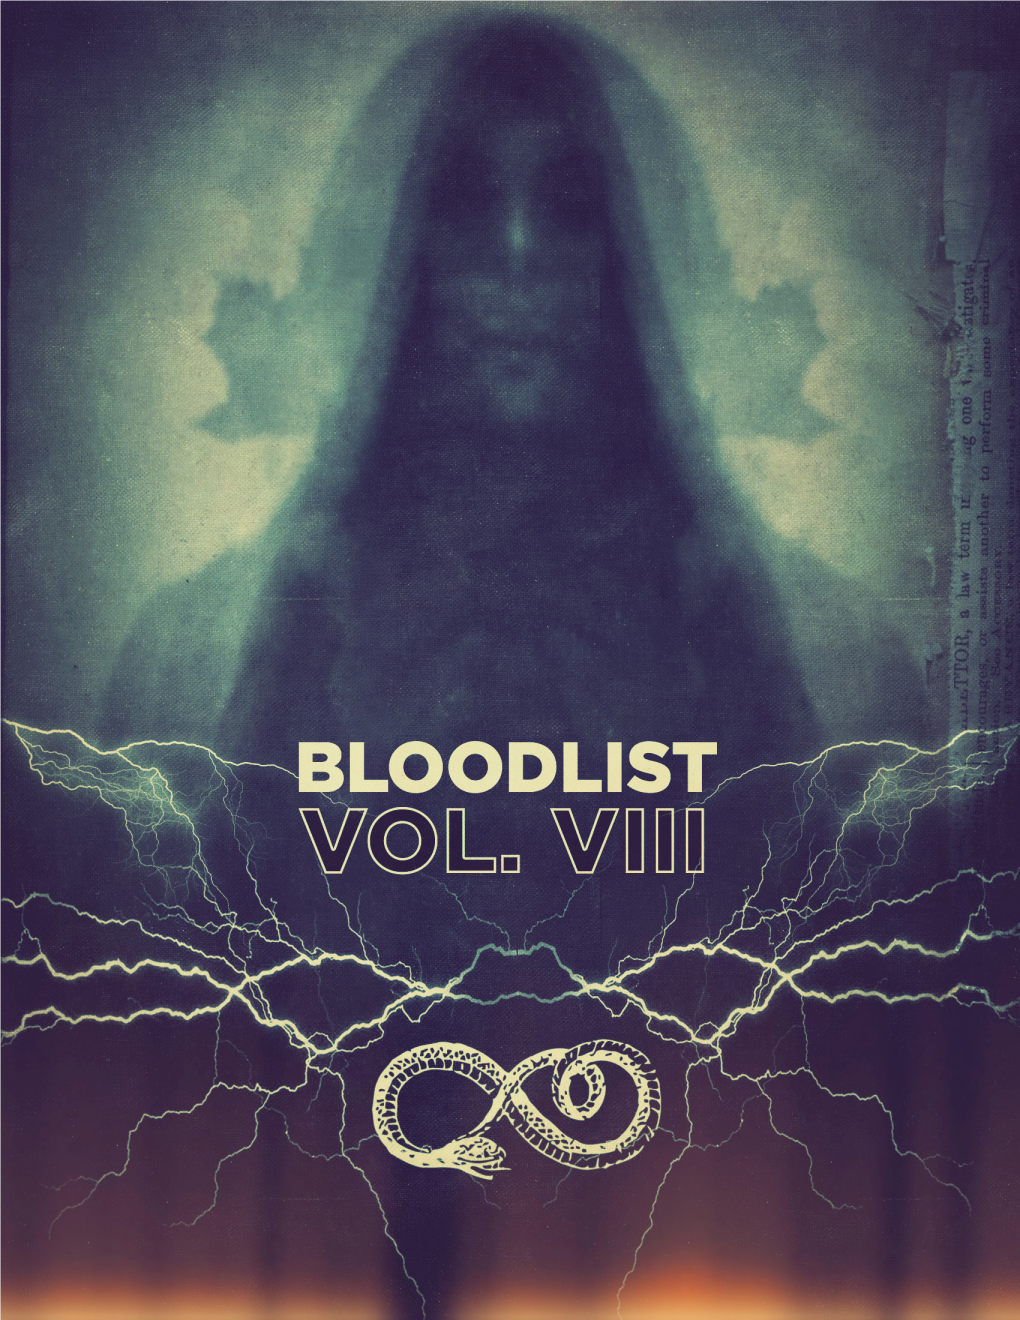 The 2016 Bloodlist